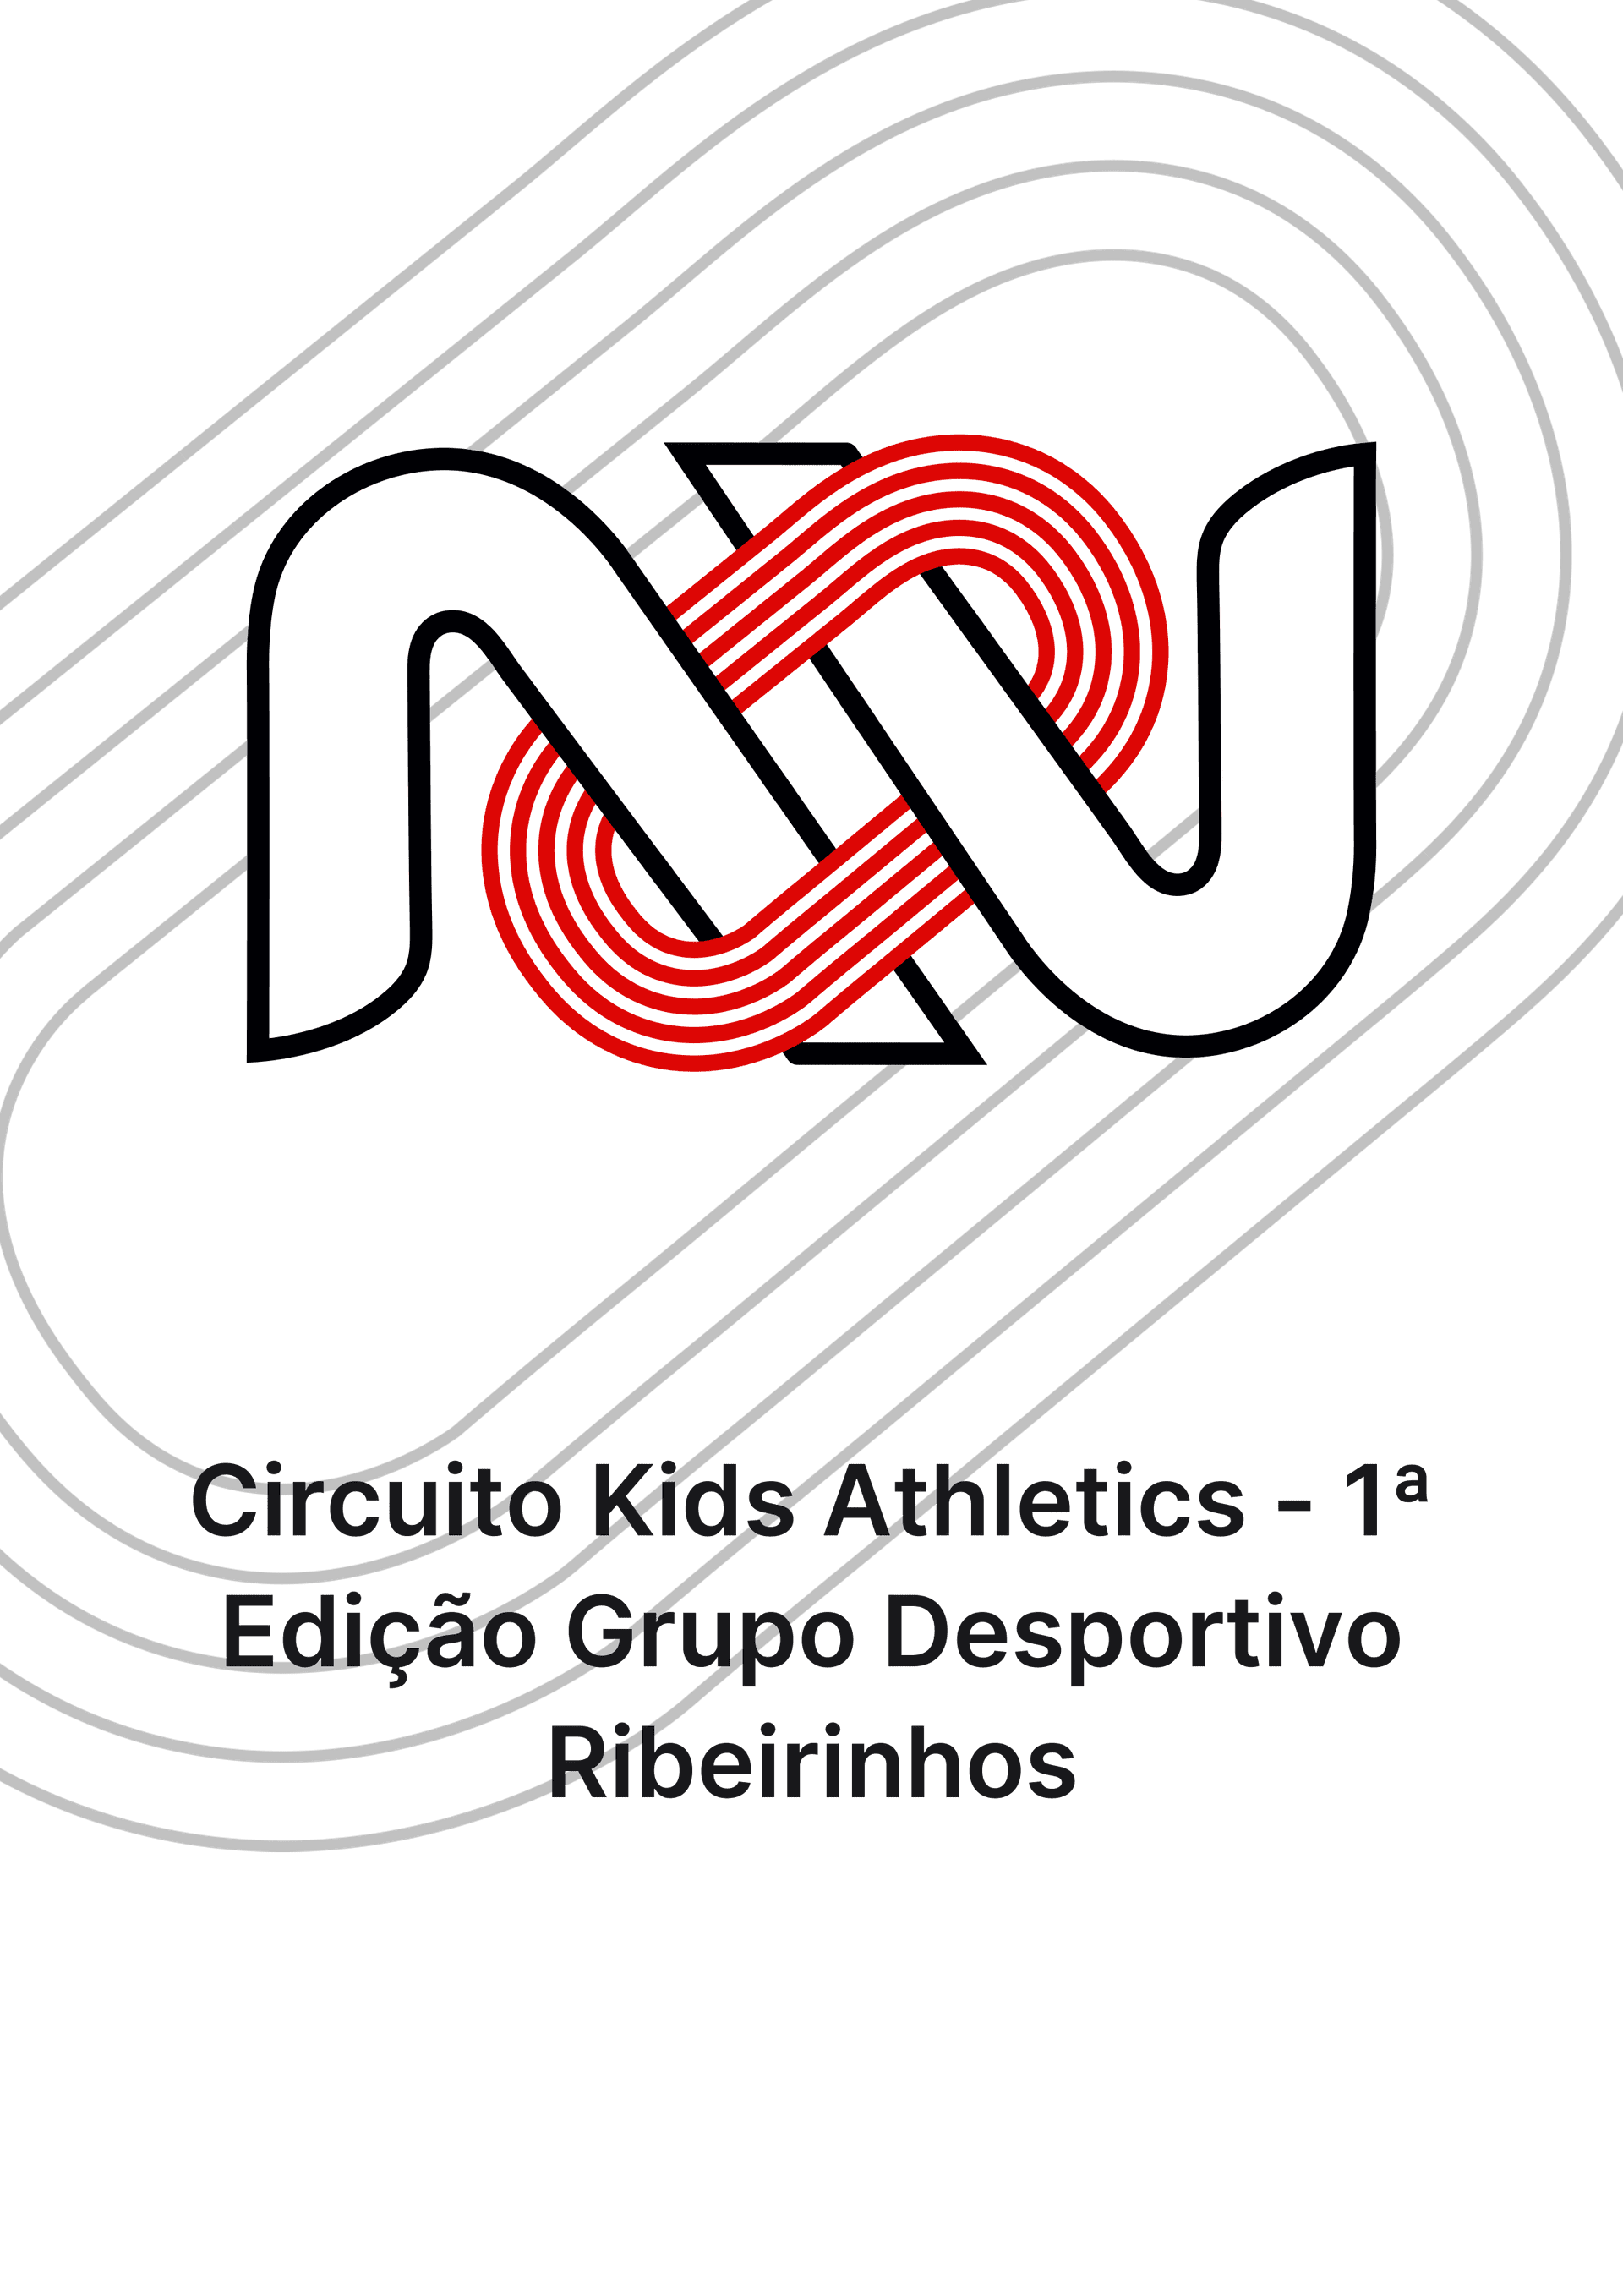 Circuito Kids Athletics - 1ª Edição Grupo Desportivo Ribeirinhos